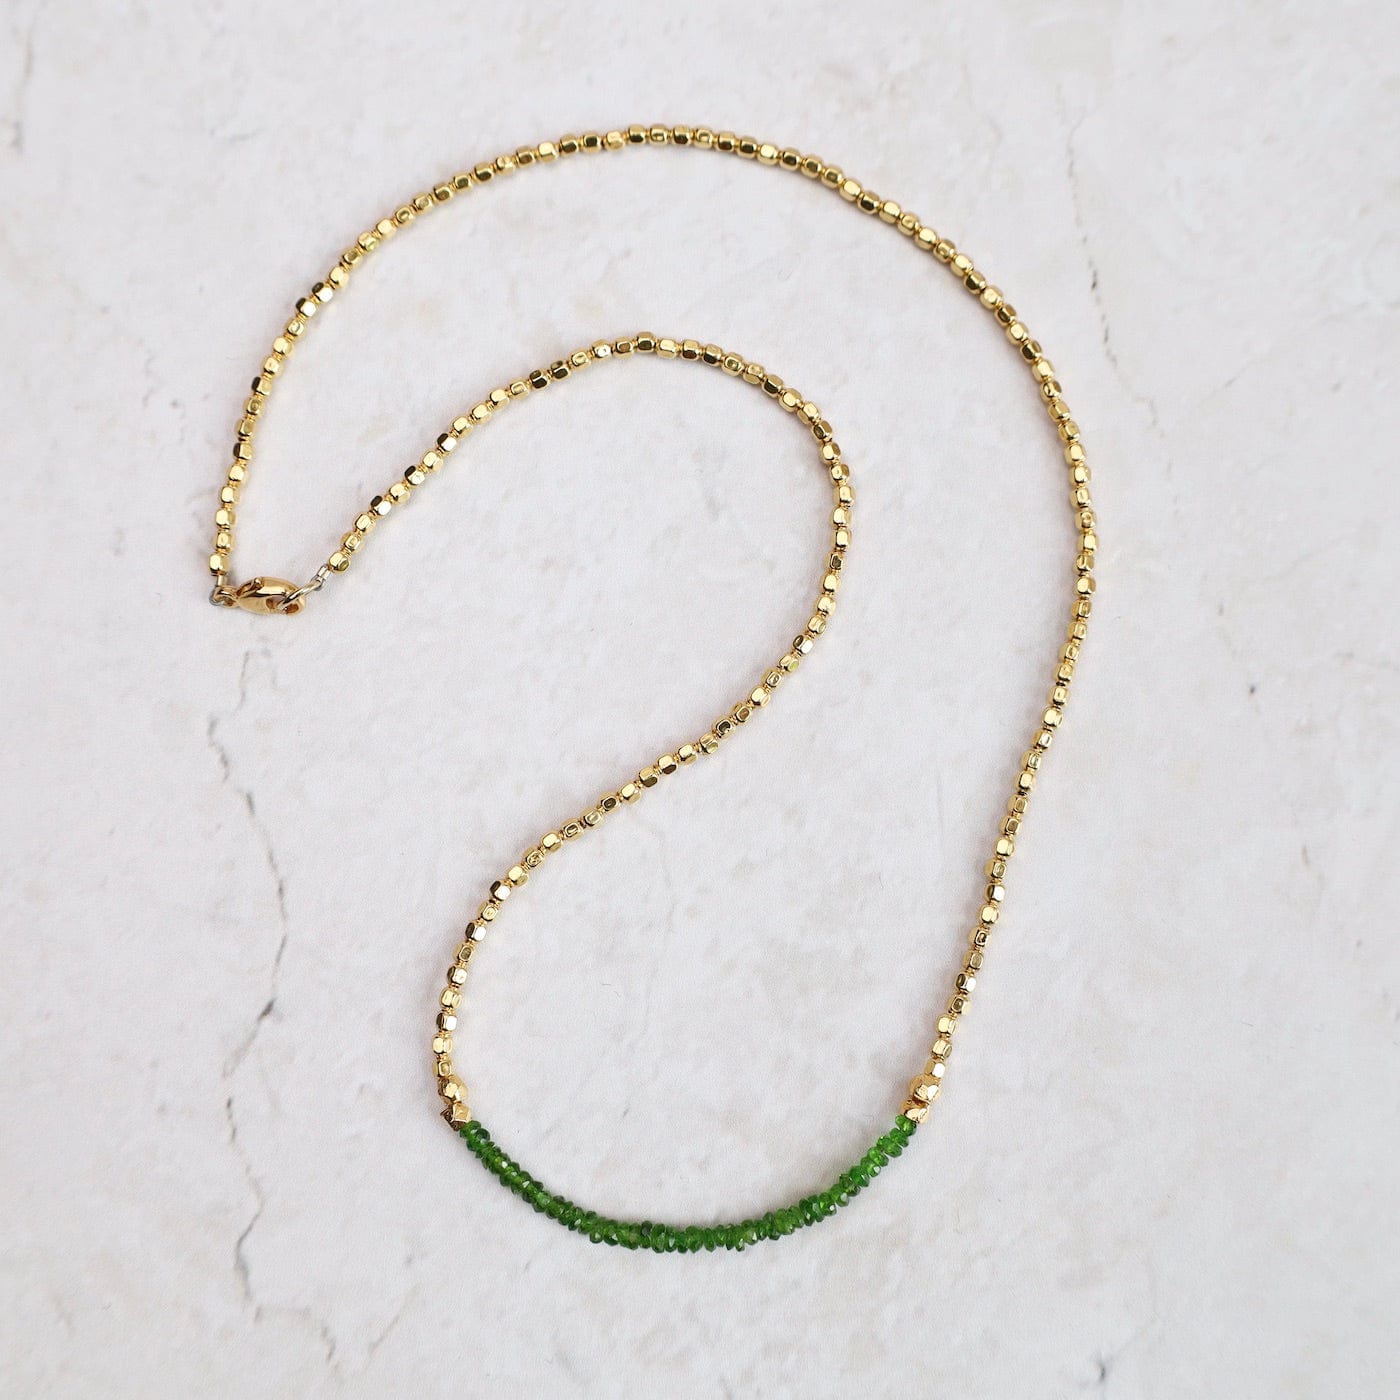 NKL-VRM Gemstone Rondelle Necklace in Green Garnet